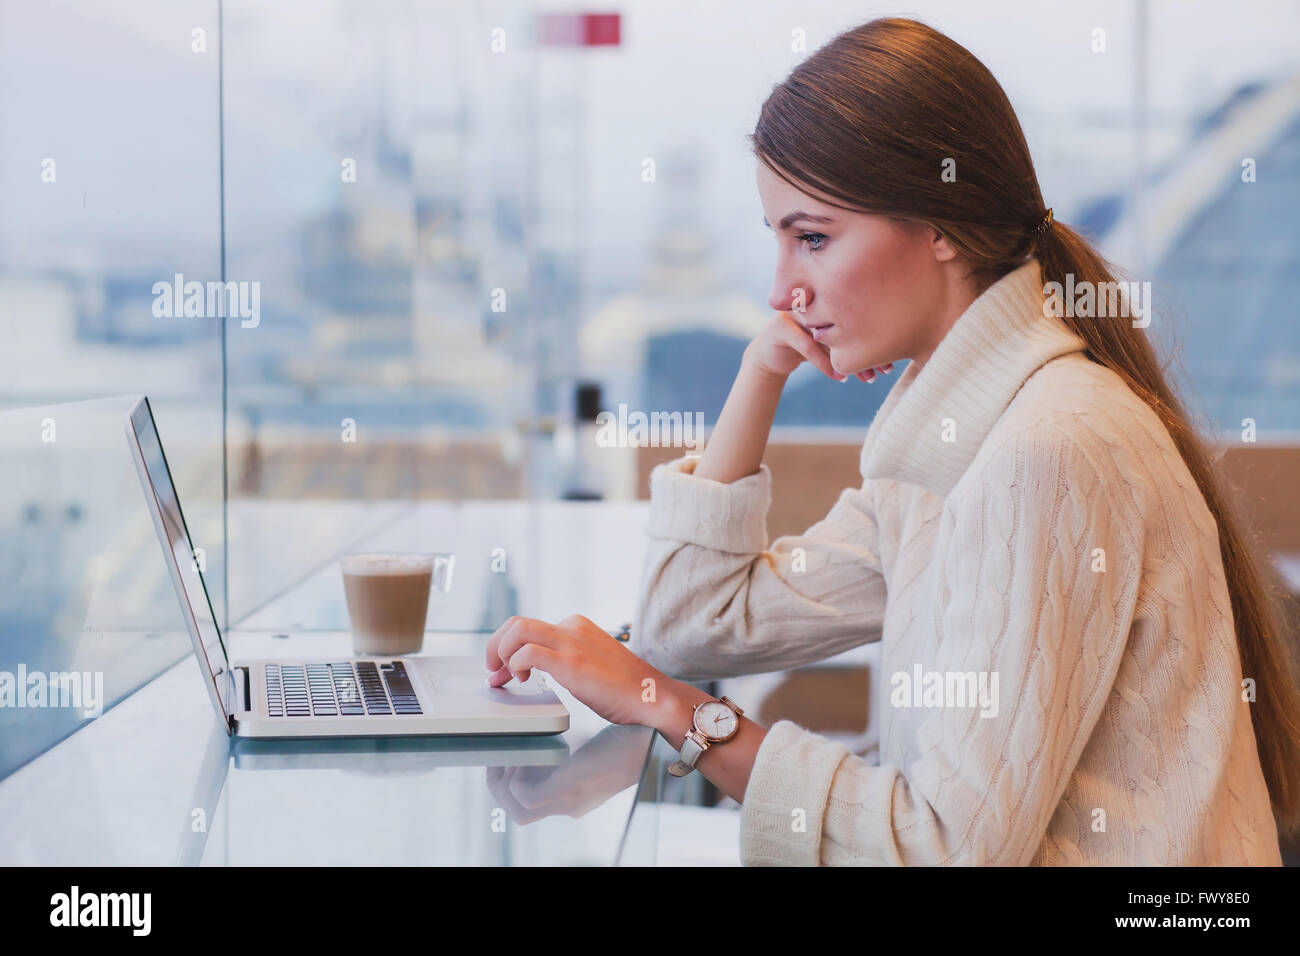 Woman using laptop in cafe moderne intérieur, connexion Wi-Fi gratuite, la vérification du courrier électronique Banque D'Images